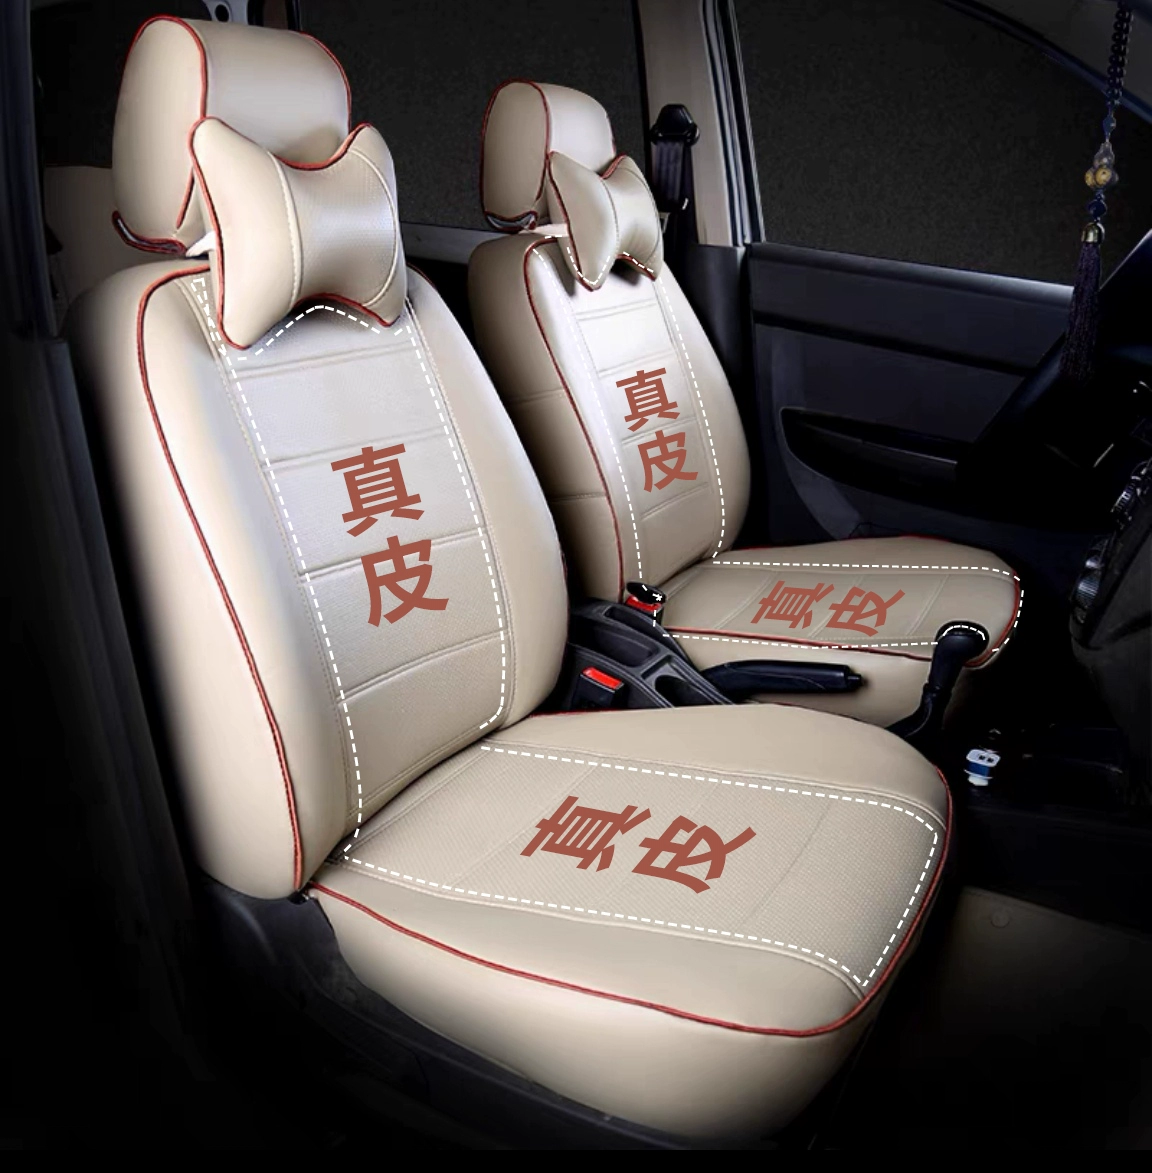 Bọc ghế ô tô được bao bọc hoàn toàn bằng da thật, đệm ghế Volkswagen theo yêu cầu theo từng mùa, bọc ghế chống mài mòn dành riêng cho xe ô tô chọn màu ghế da ô tô 